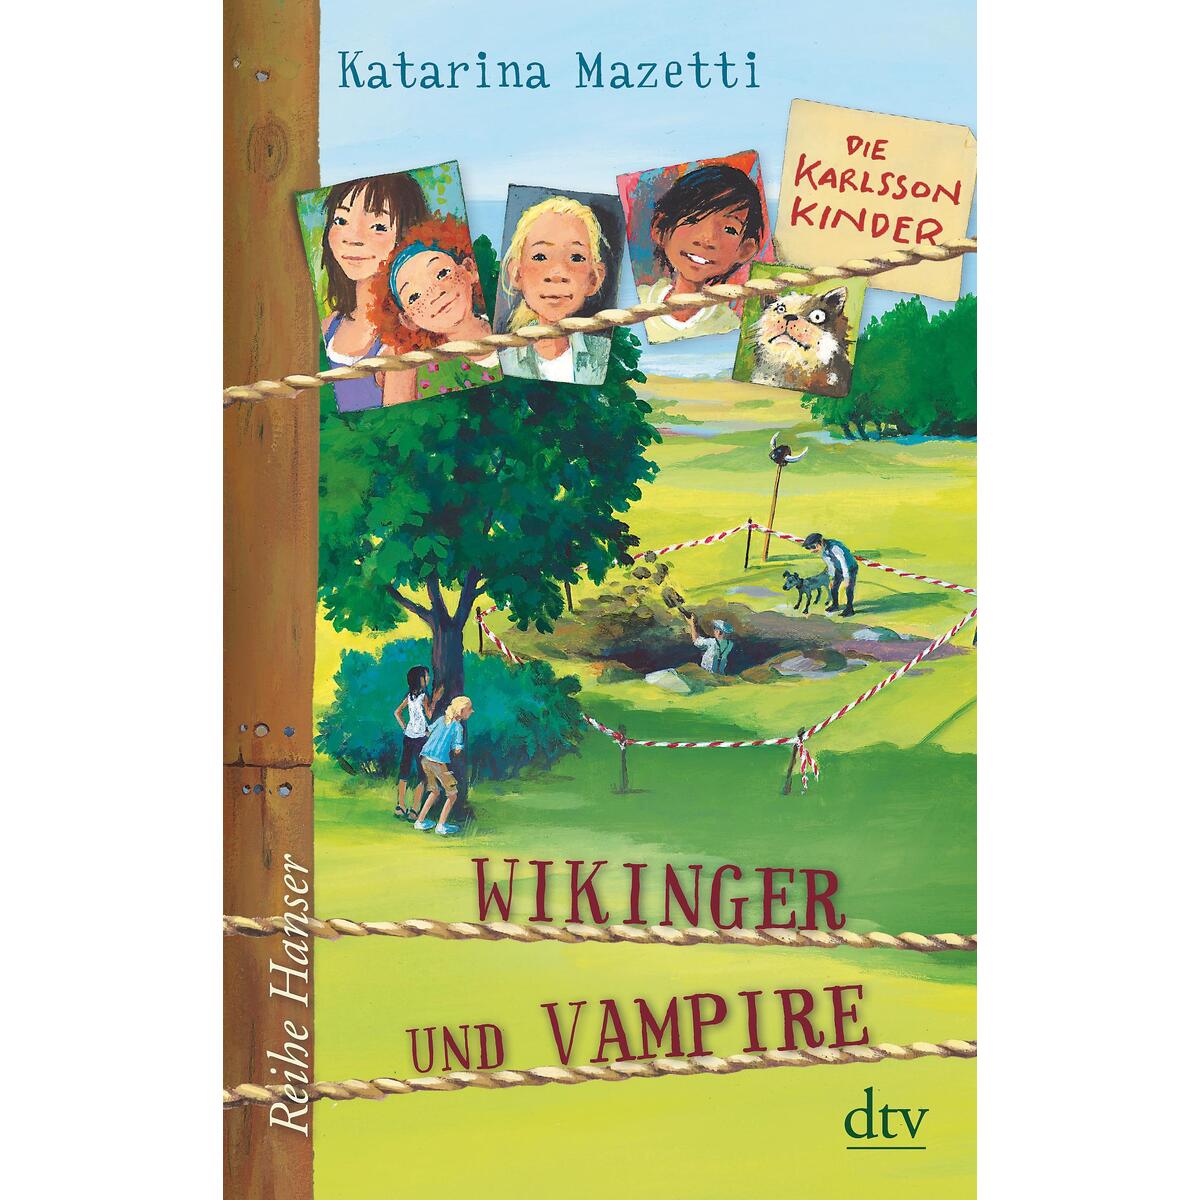 Die Karlsson-Kinder (3) Wikinger und Vampire von dtv Verlagsgesellschaft